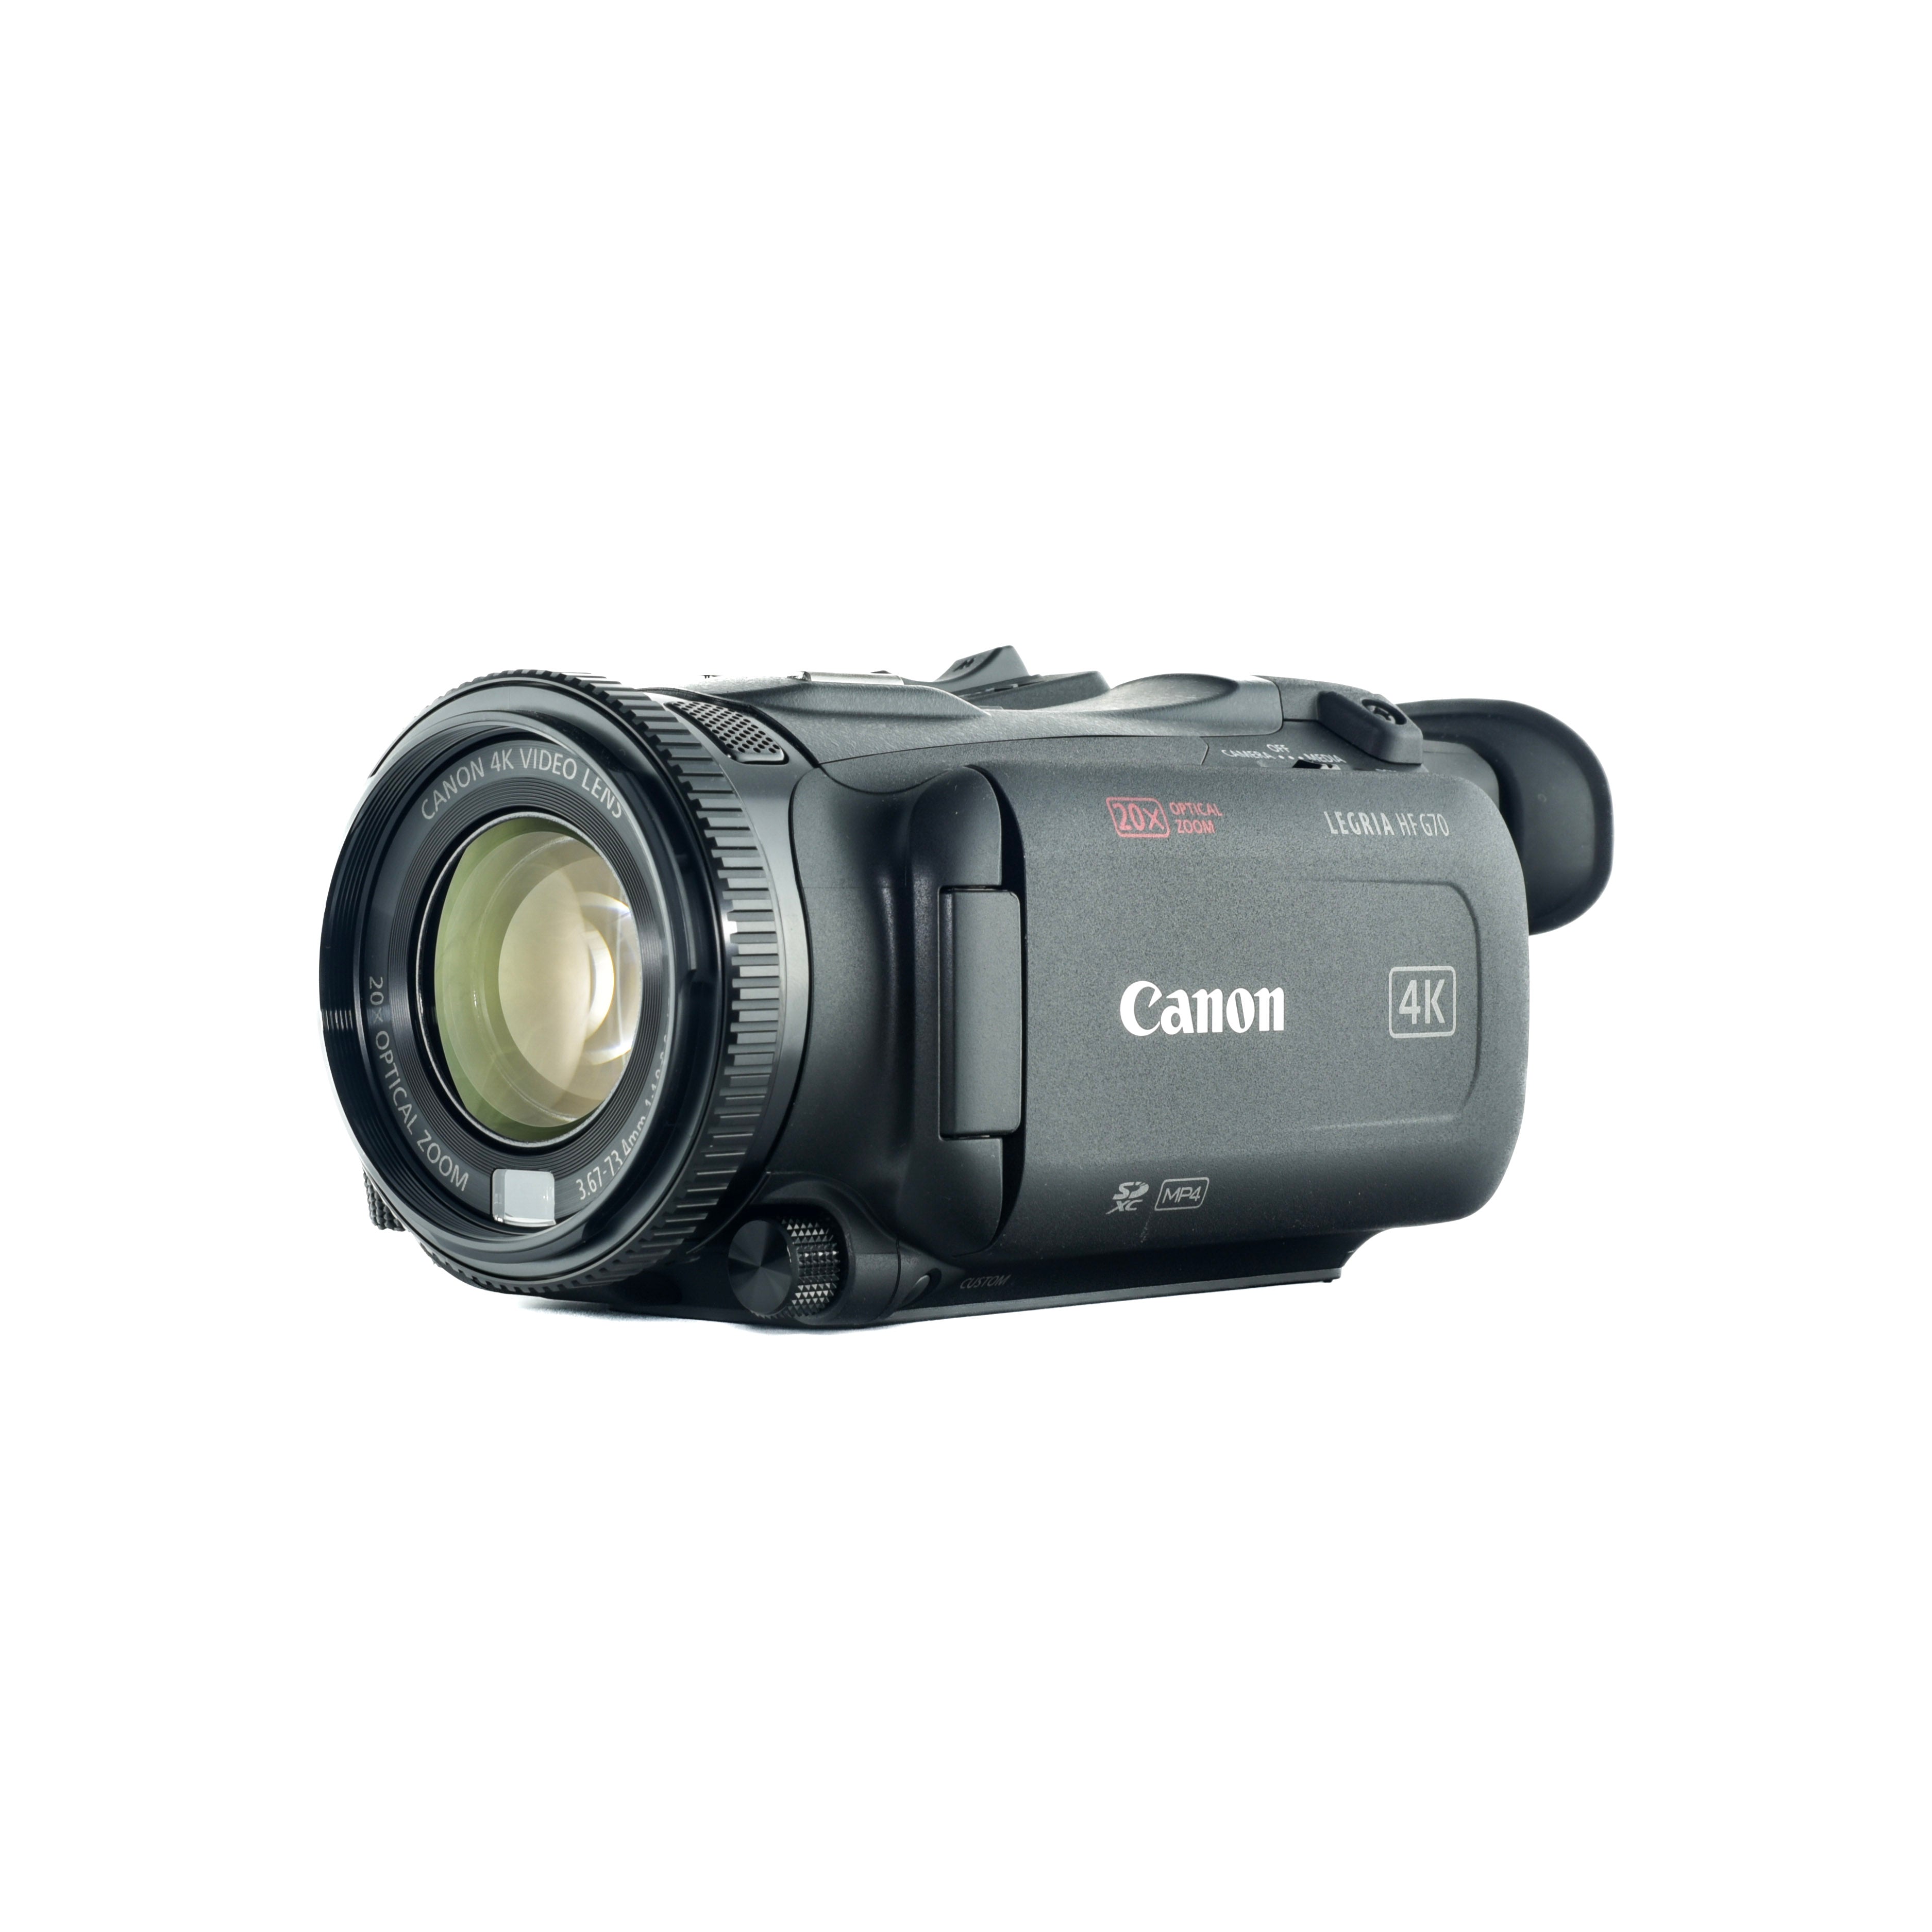 Canon Legria HF G70 4k Camcorder